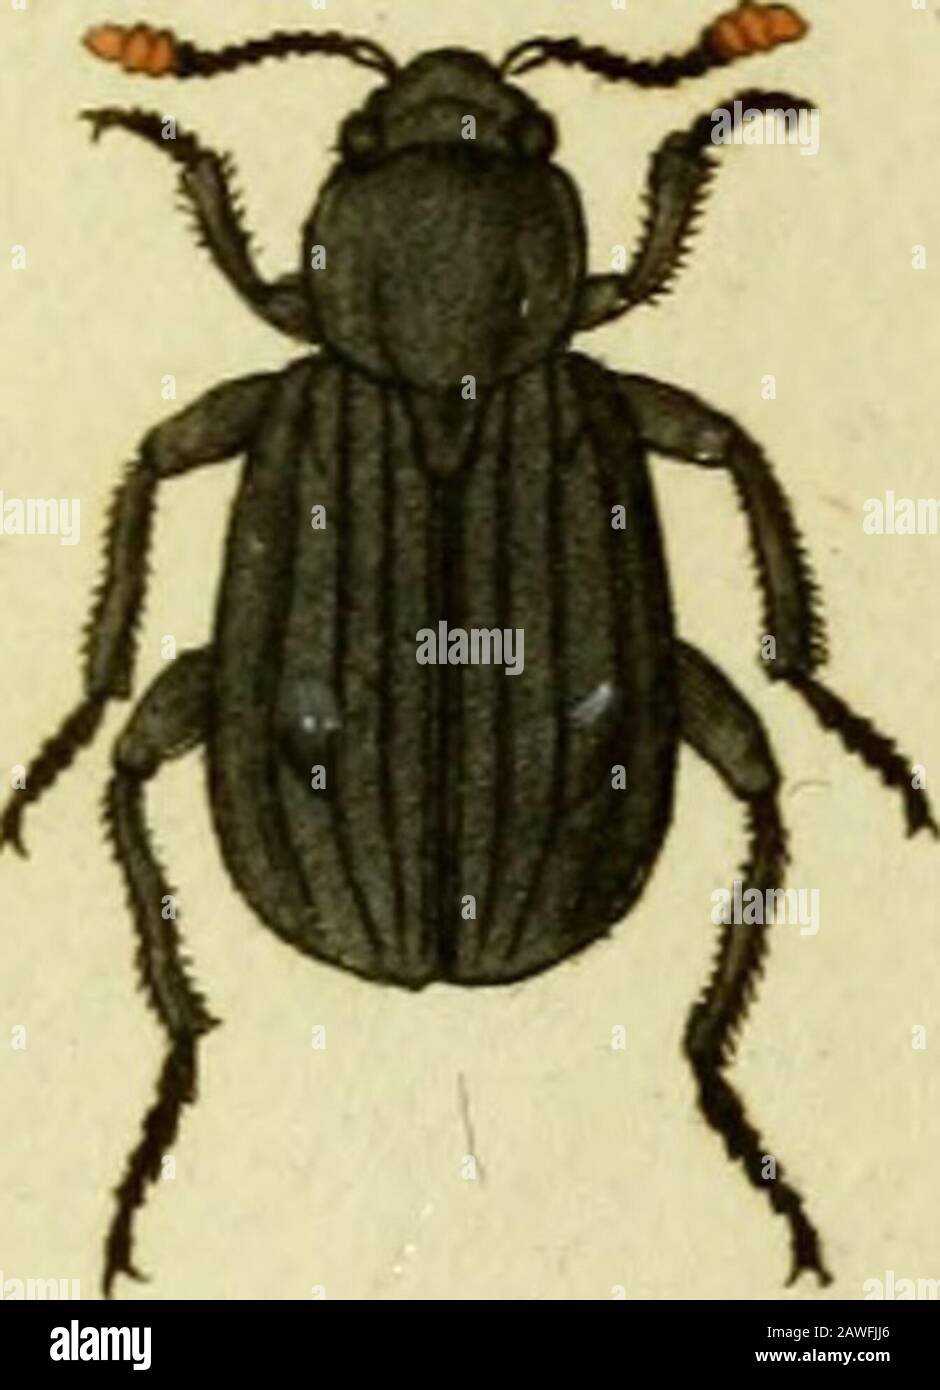 Favnae insectorvm Germanicae initia, oder, Deutschlands Insecten . 2)er-niestes i/ini EMiAi 3.6t^J^&gt; DEPvMEST£&gt;S vini.Das l^ein - Keif er che n^ X)£ymeßes vlni: oblongus feirngineus, thorace qiiadiato ntrinque antice loLatöelytris punctatis. » Habitat in fioribus, femel captus. Similis D. cdlar, F. Totus feirngineus. Oculi nigri. Antennae pilofaearticulis tiibus ultimis maioribus. Thorax tpadratus fübdepreflus pimctatus obfcn*rior, margine laterali utrinque antice lobato. Elytra punctata pilofa. Corpus fabtus et pedes ferruginea. a. Magnitudo naturalis, b, Eadem aiicta. 14. Silp/ia. /ttt Stock Photo